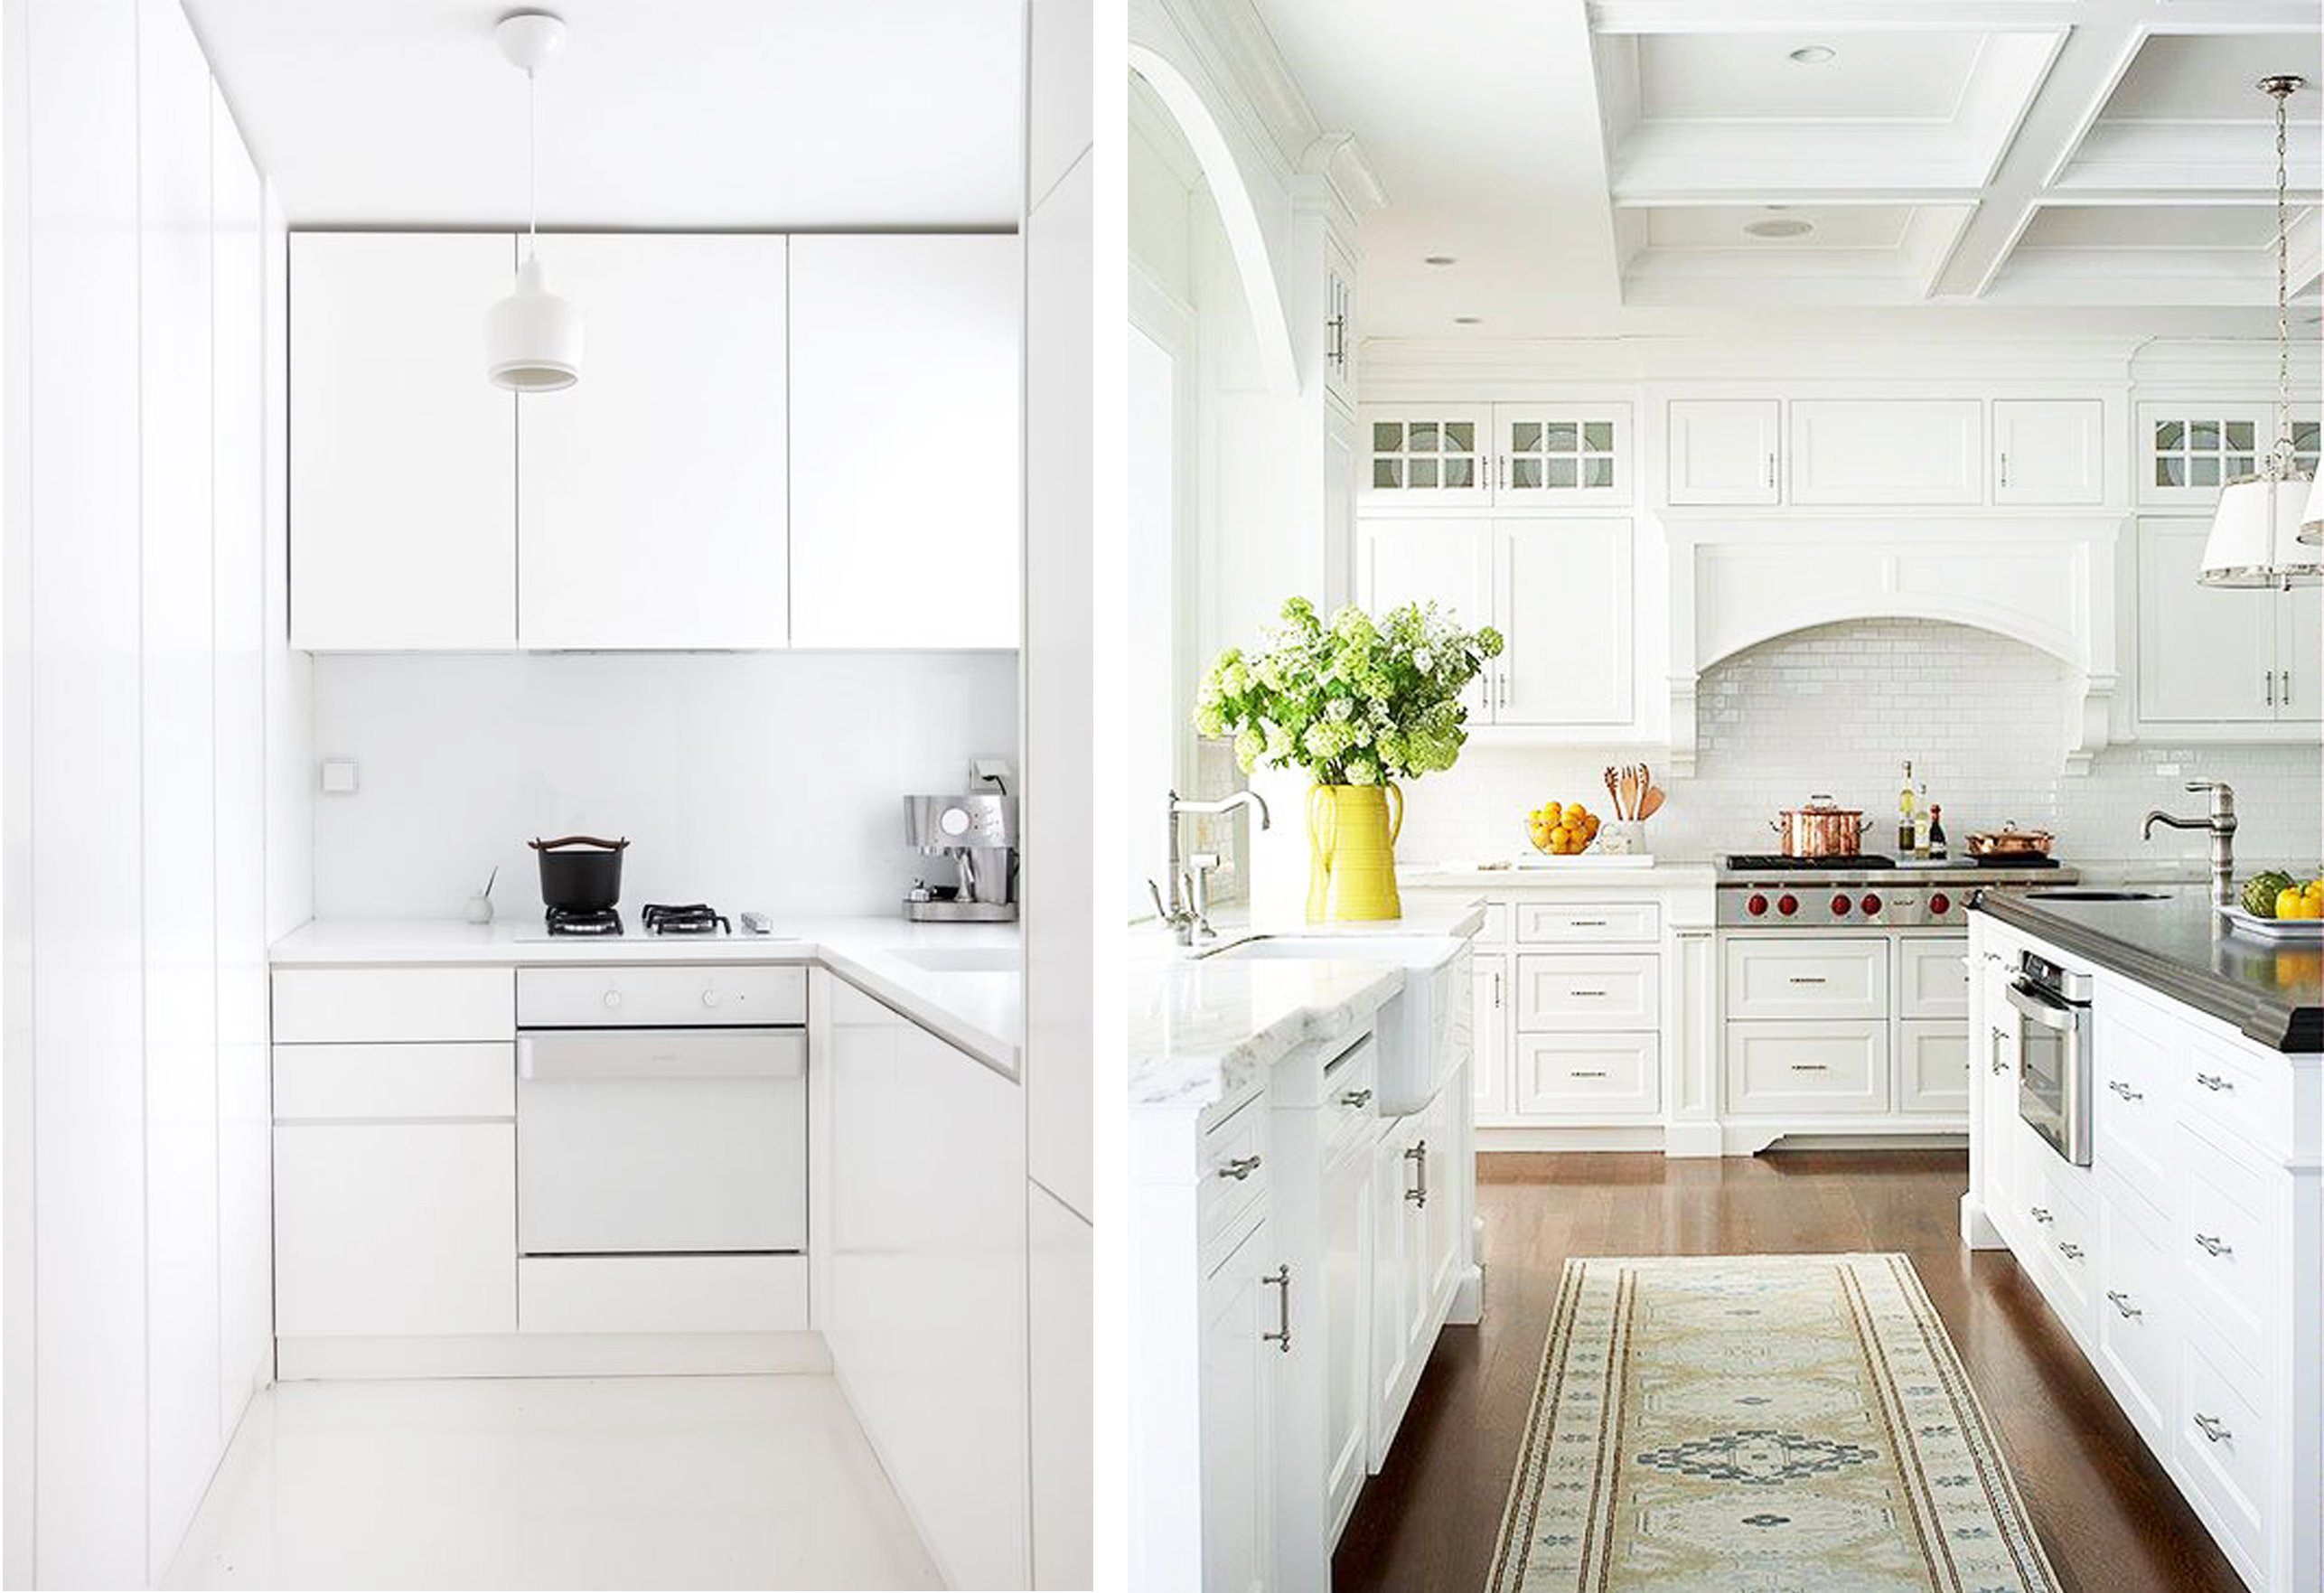 Кухни IKEA: фото в интерьере и справка для покупателя | Кухня, Кухня ikea, Интерьер